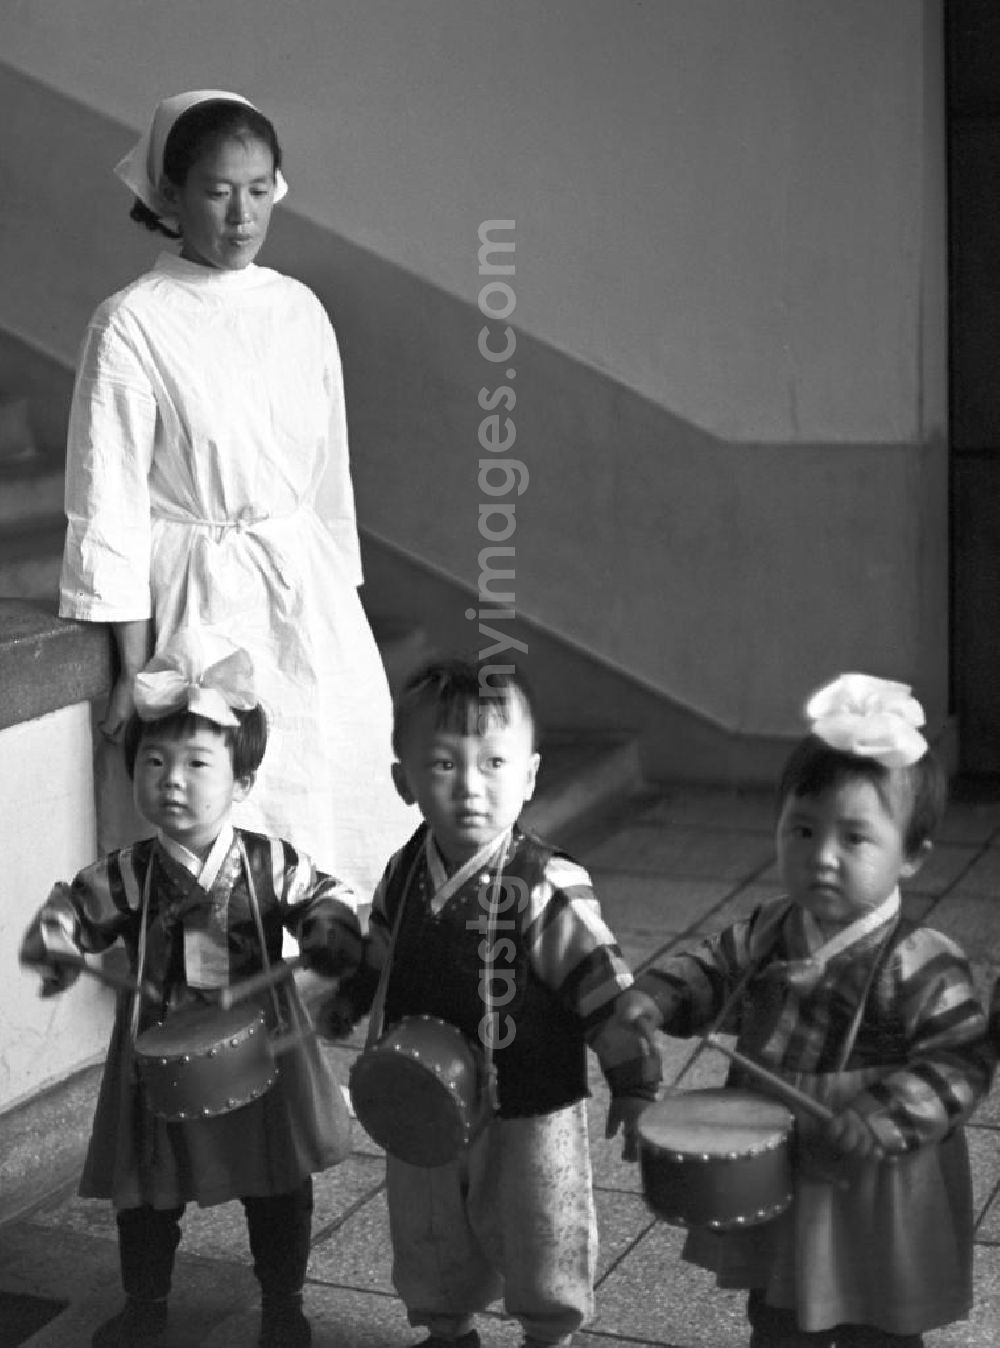 GDR photo archive: Pjöngjang - In einem Kindergarten in Pjöngjang, der Hauptstadt der Koreanischen Demokratischen Volksrepublik KDVR - Nordkorea / Democratic People's Republic of Korea DPRK - North Korea, trommeln kleine Kinder auf ihren umgehängten Trommeln.